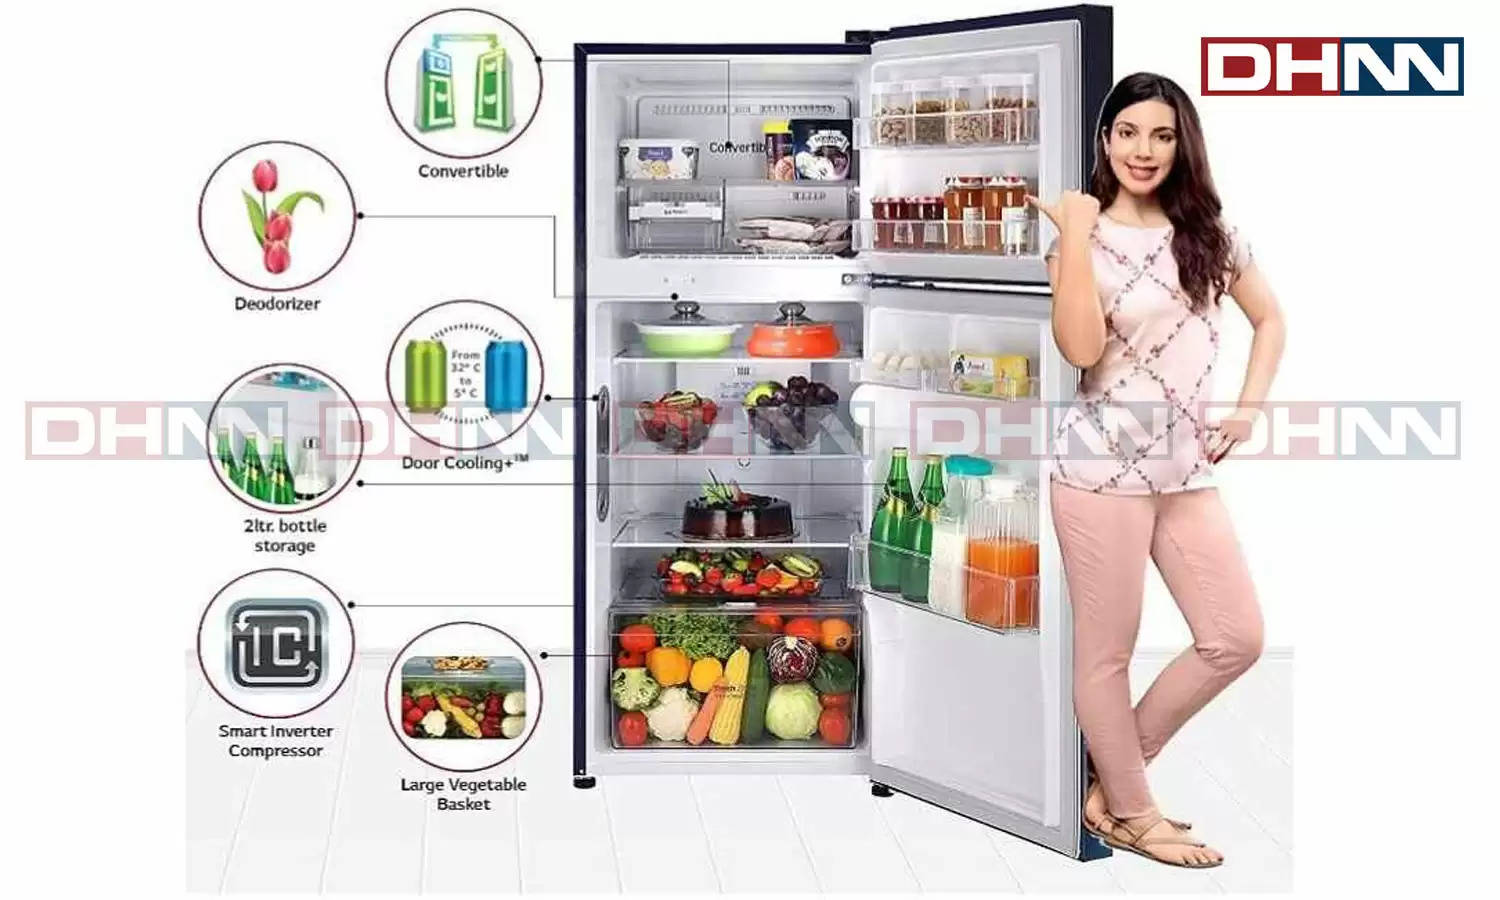 LG Refrigerator : अगर आप भी इन गर्मियों में नया फ्रिज लेने का बना रहे है मन, तो LG दे रहा है 12 हजार का डिस्काउंट 